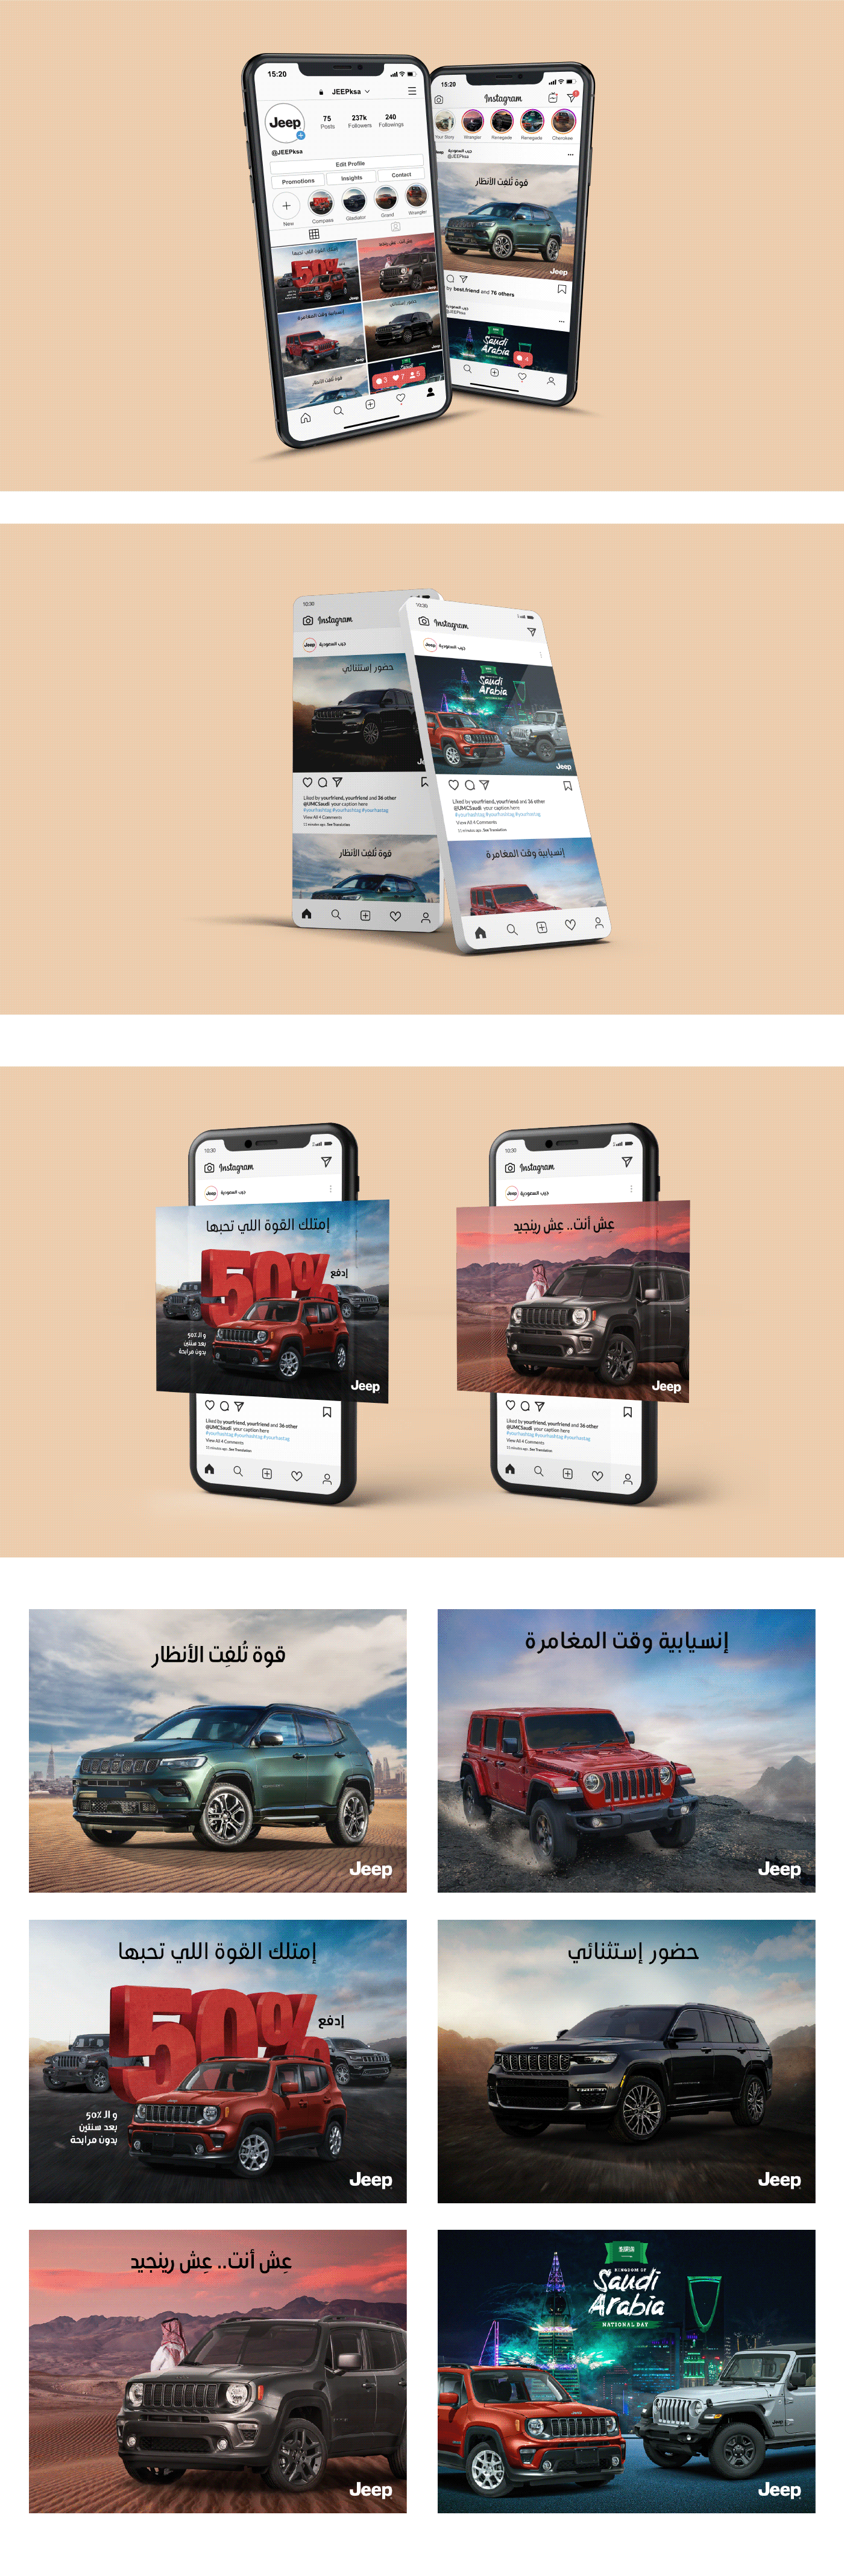 Advertising  Advertising Campaign design jeep KSA marketing   media social Social media post Socialmedia